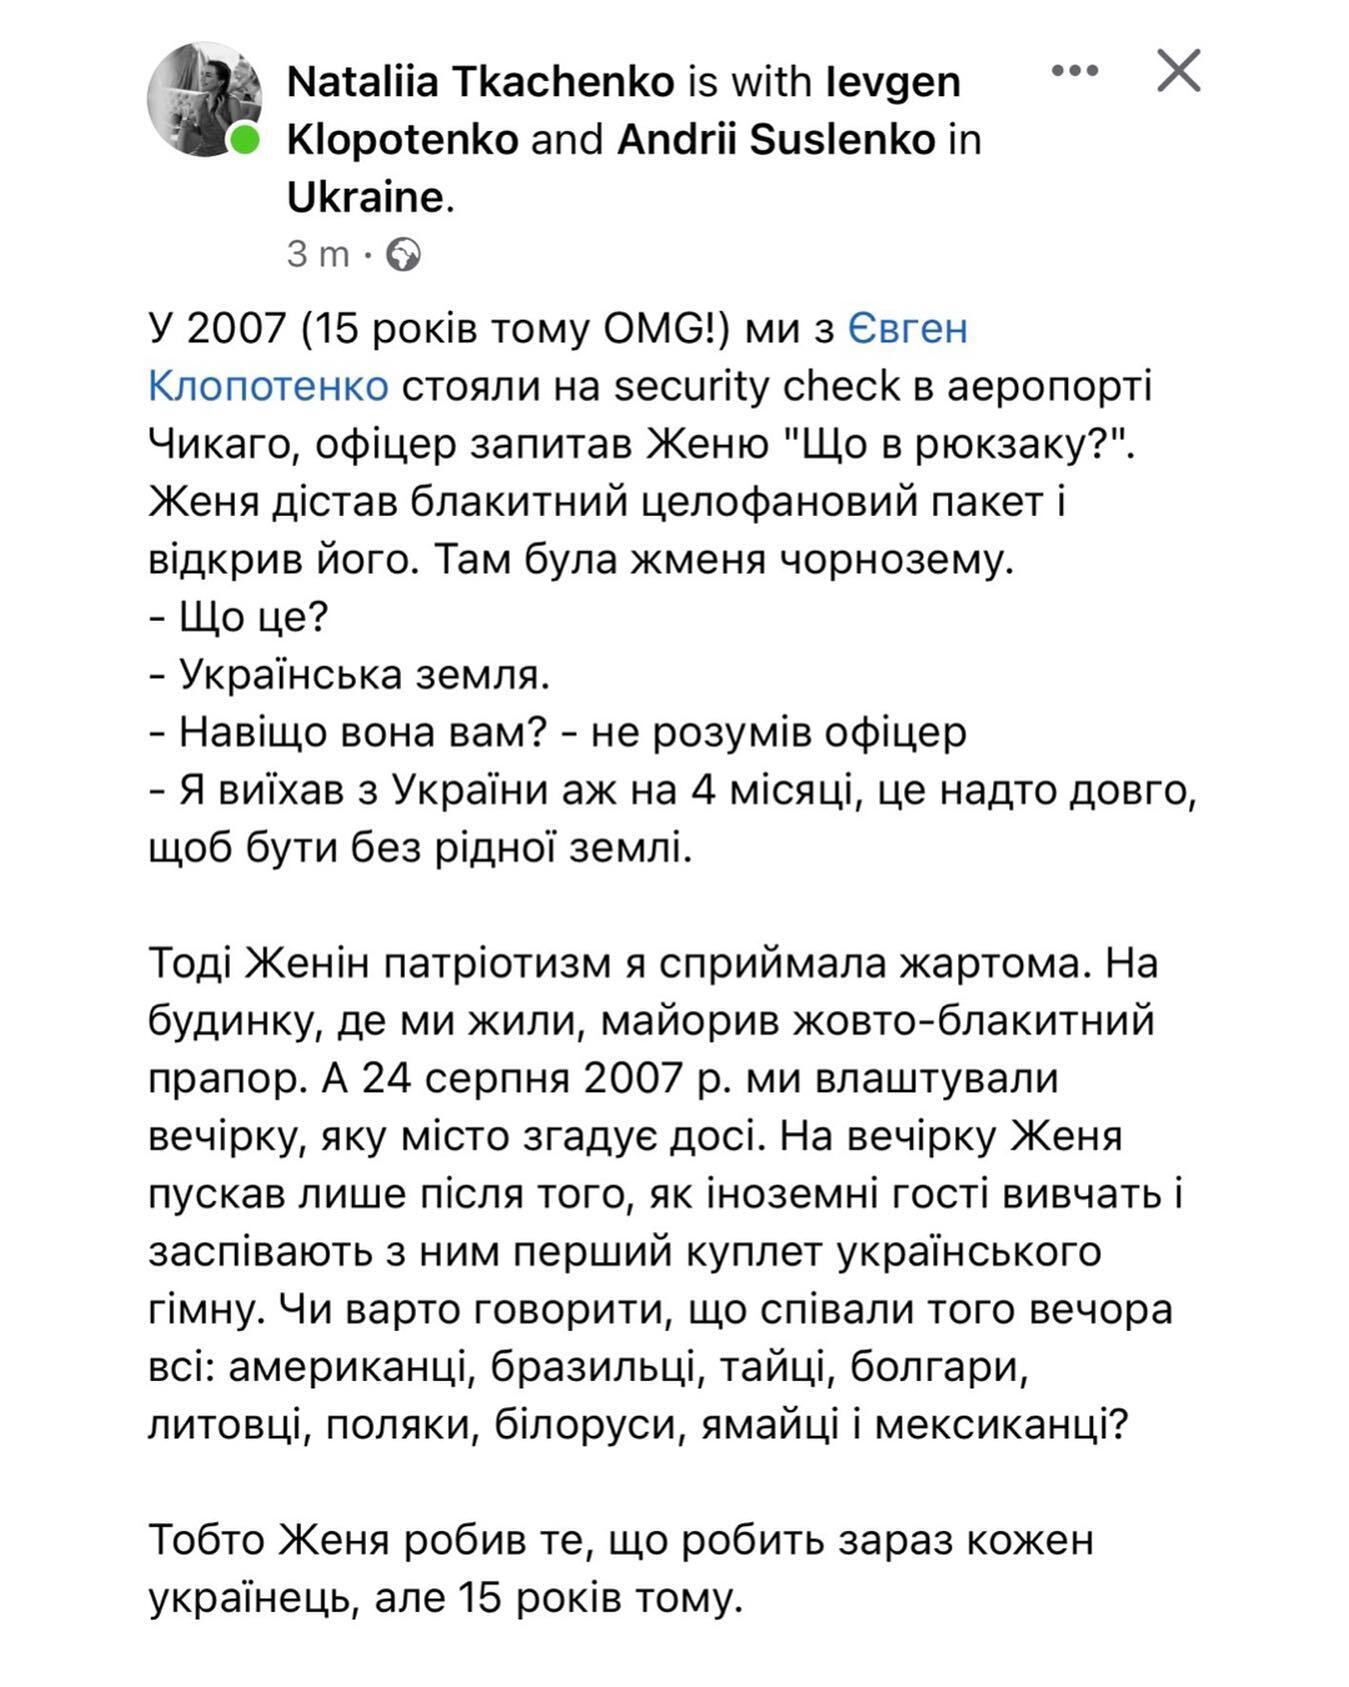 Евгений Клопотенко в 2007 году заставлял иностранцев учить гимн Украины и возил чернозем в США